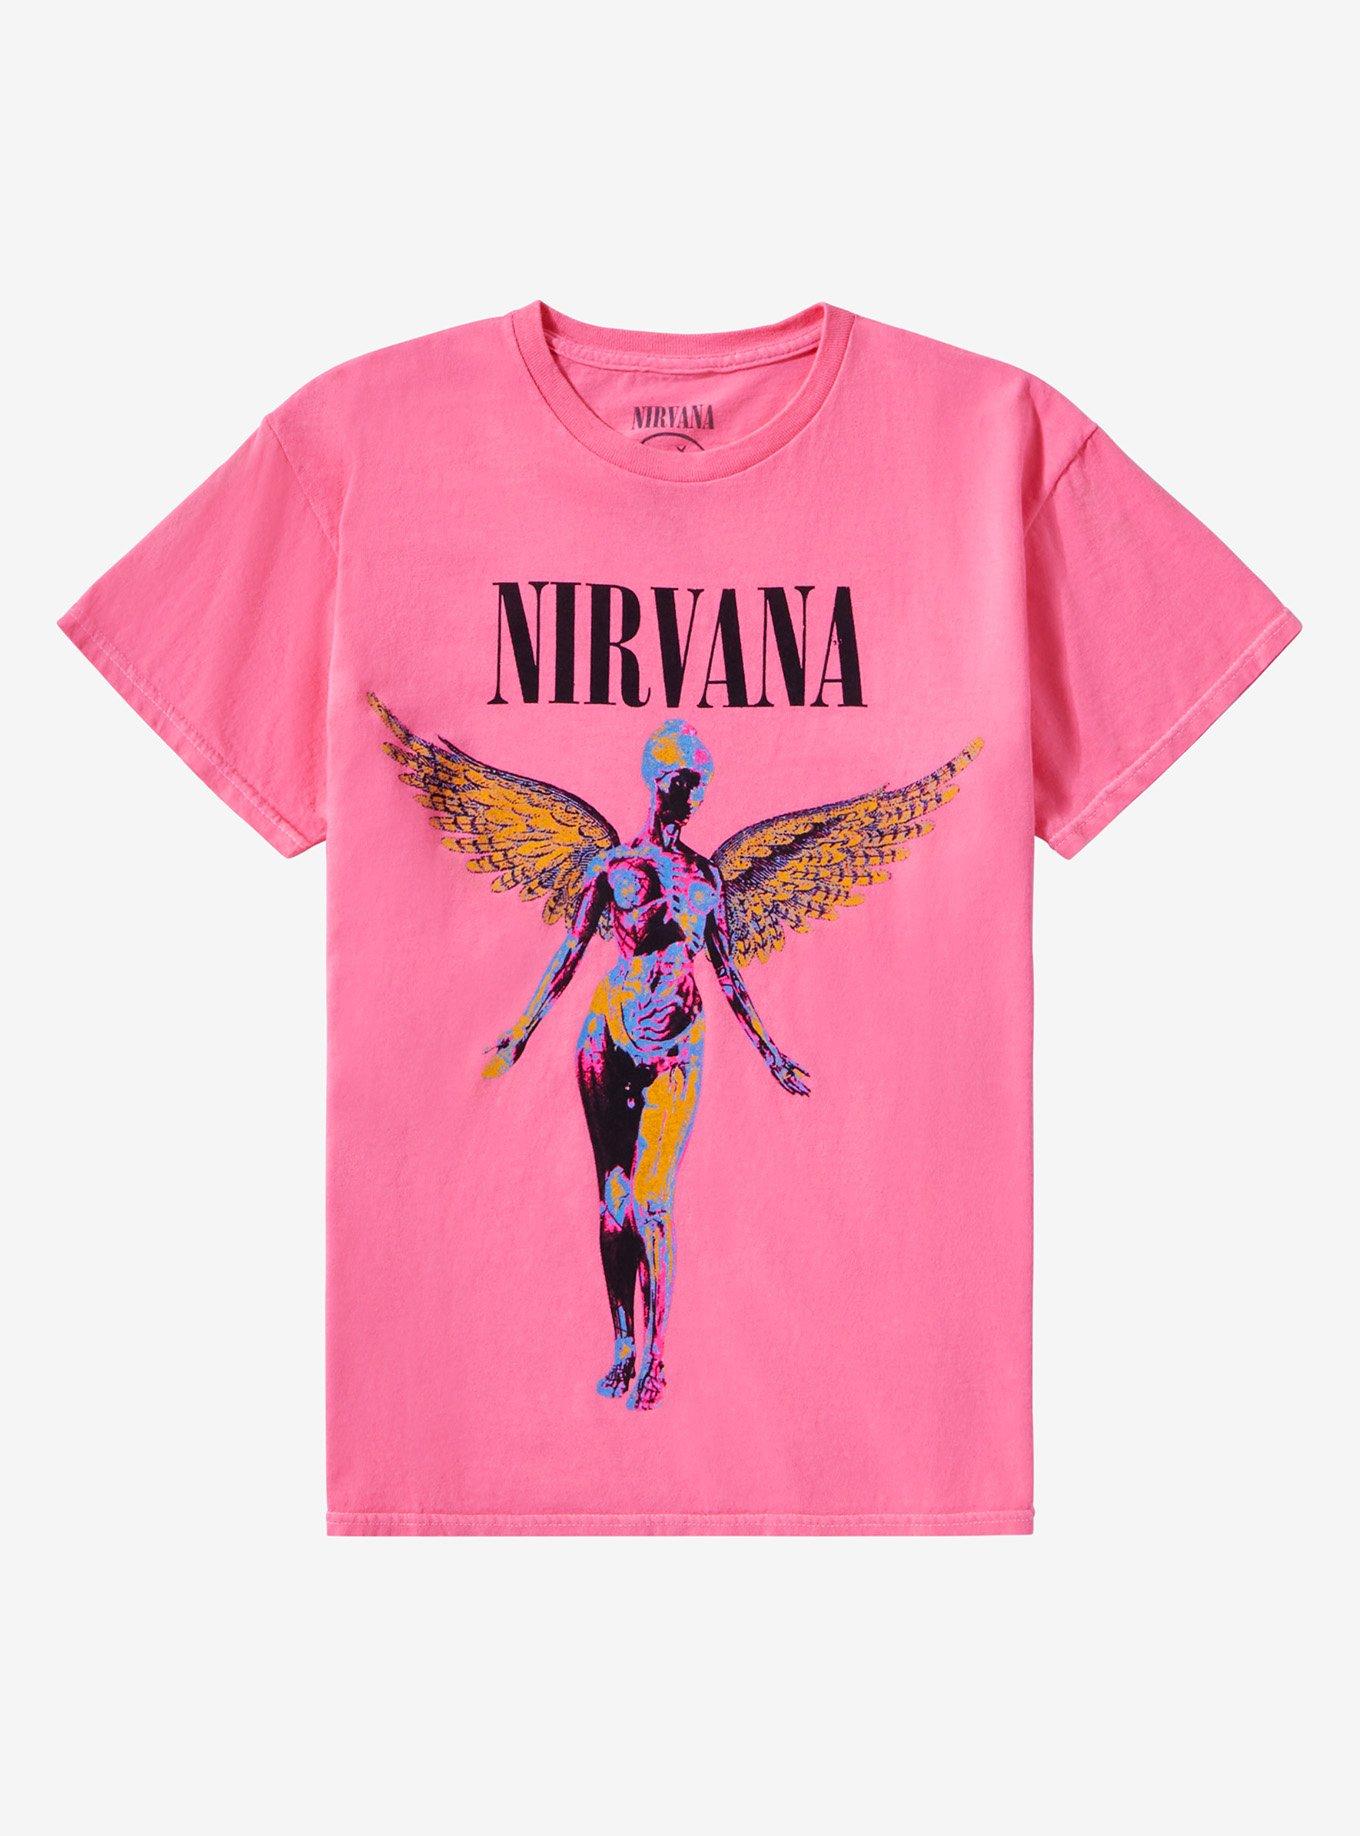 Nirvana In Utero Pink Girls T-Shirt | Hot Topic